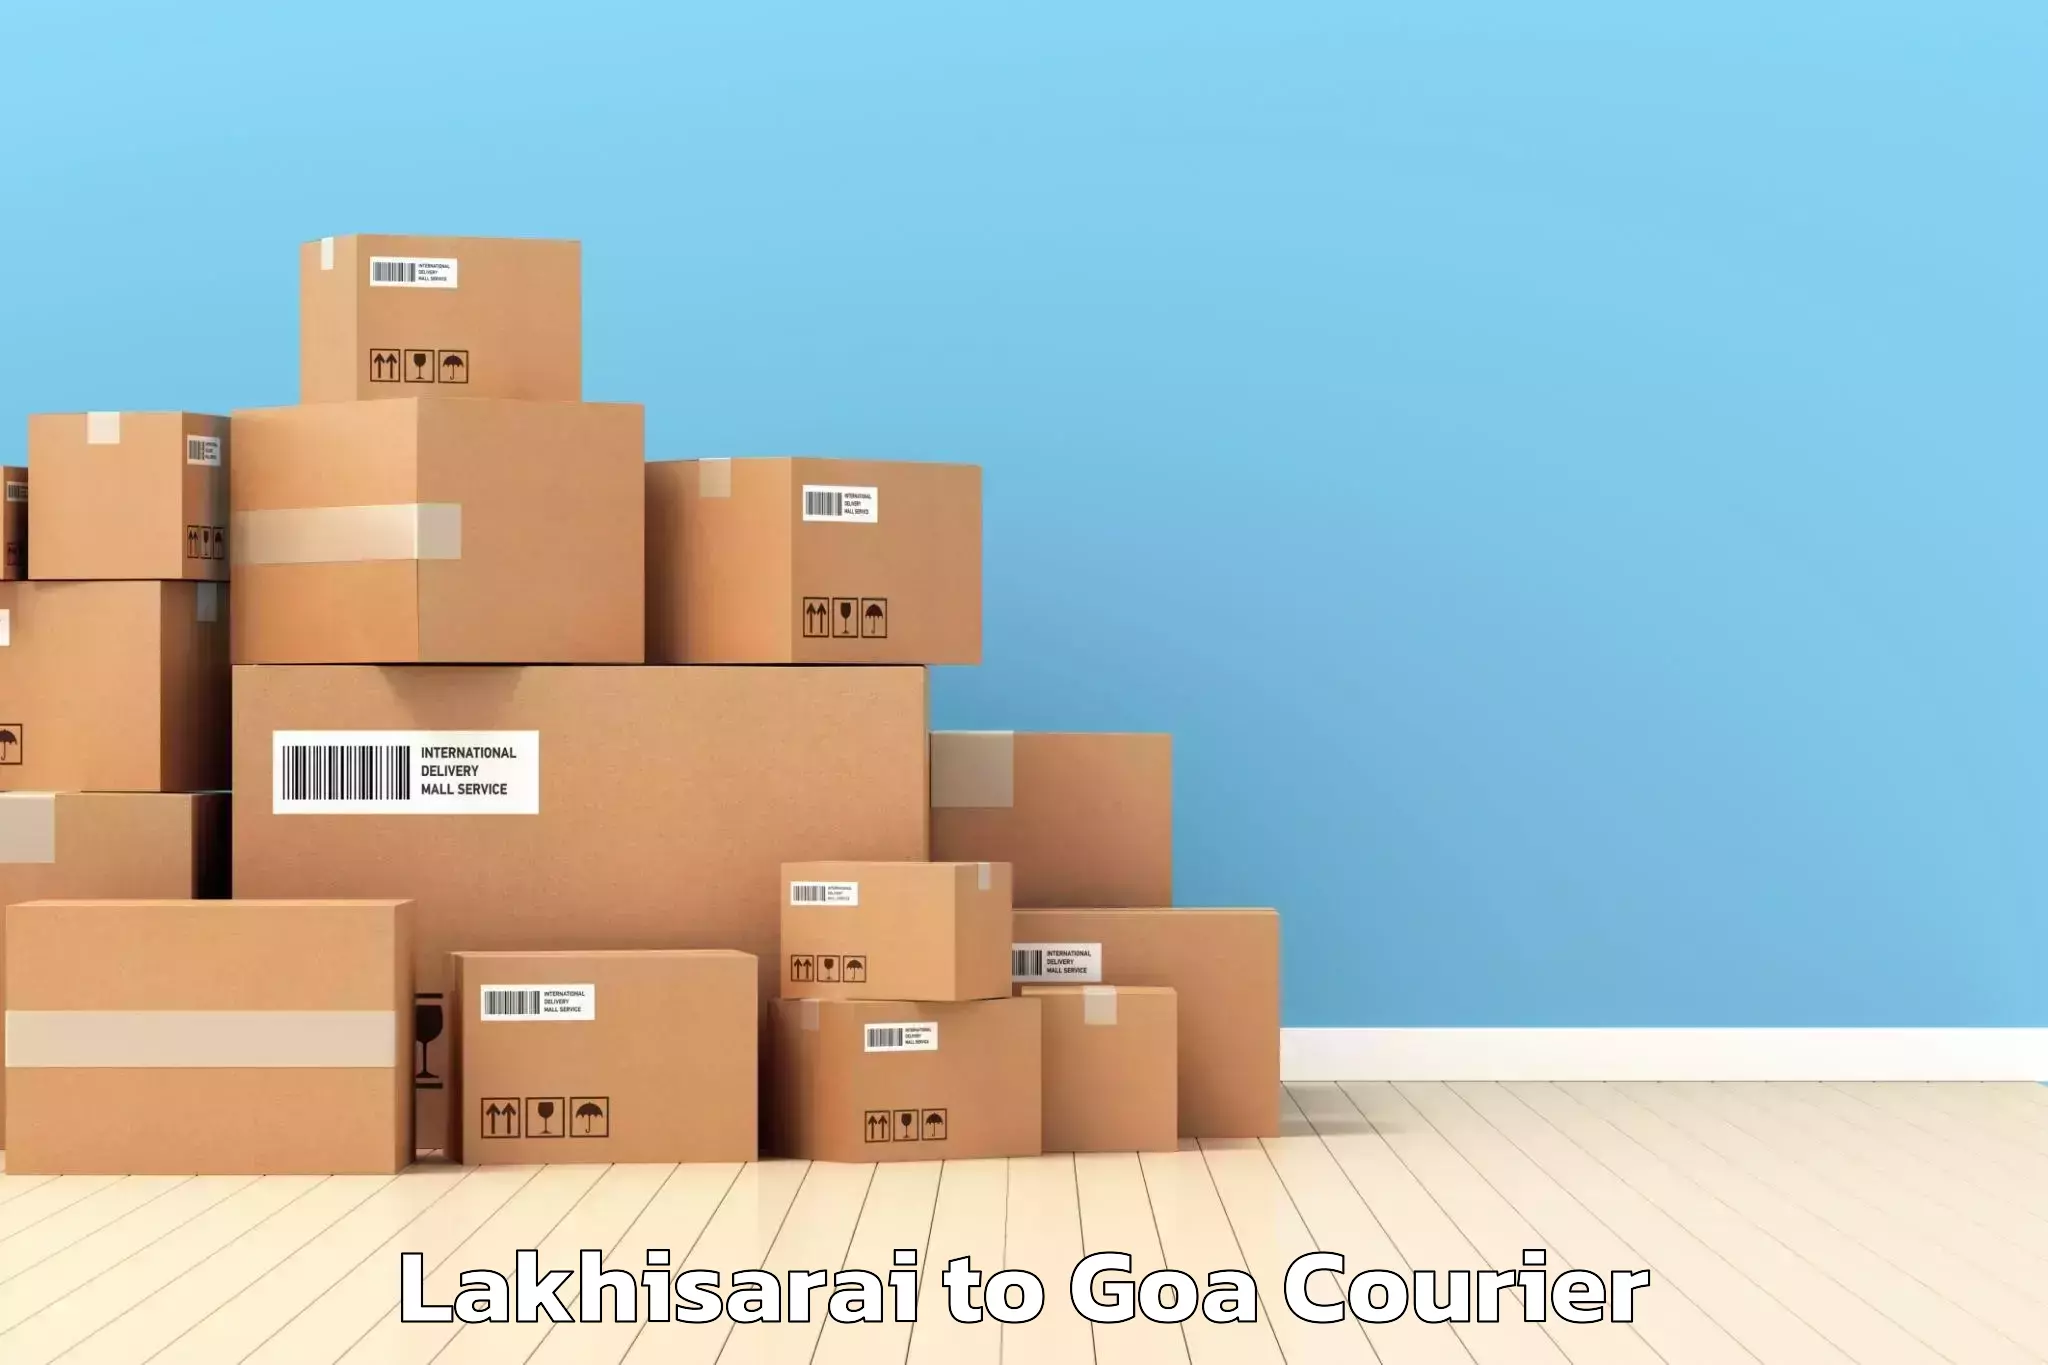 Efficient moving and packing Lakhisarai to Goa